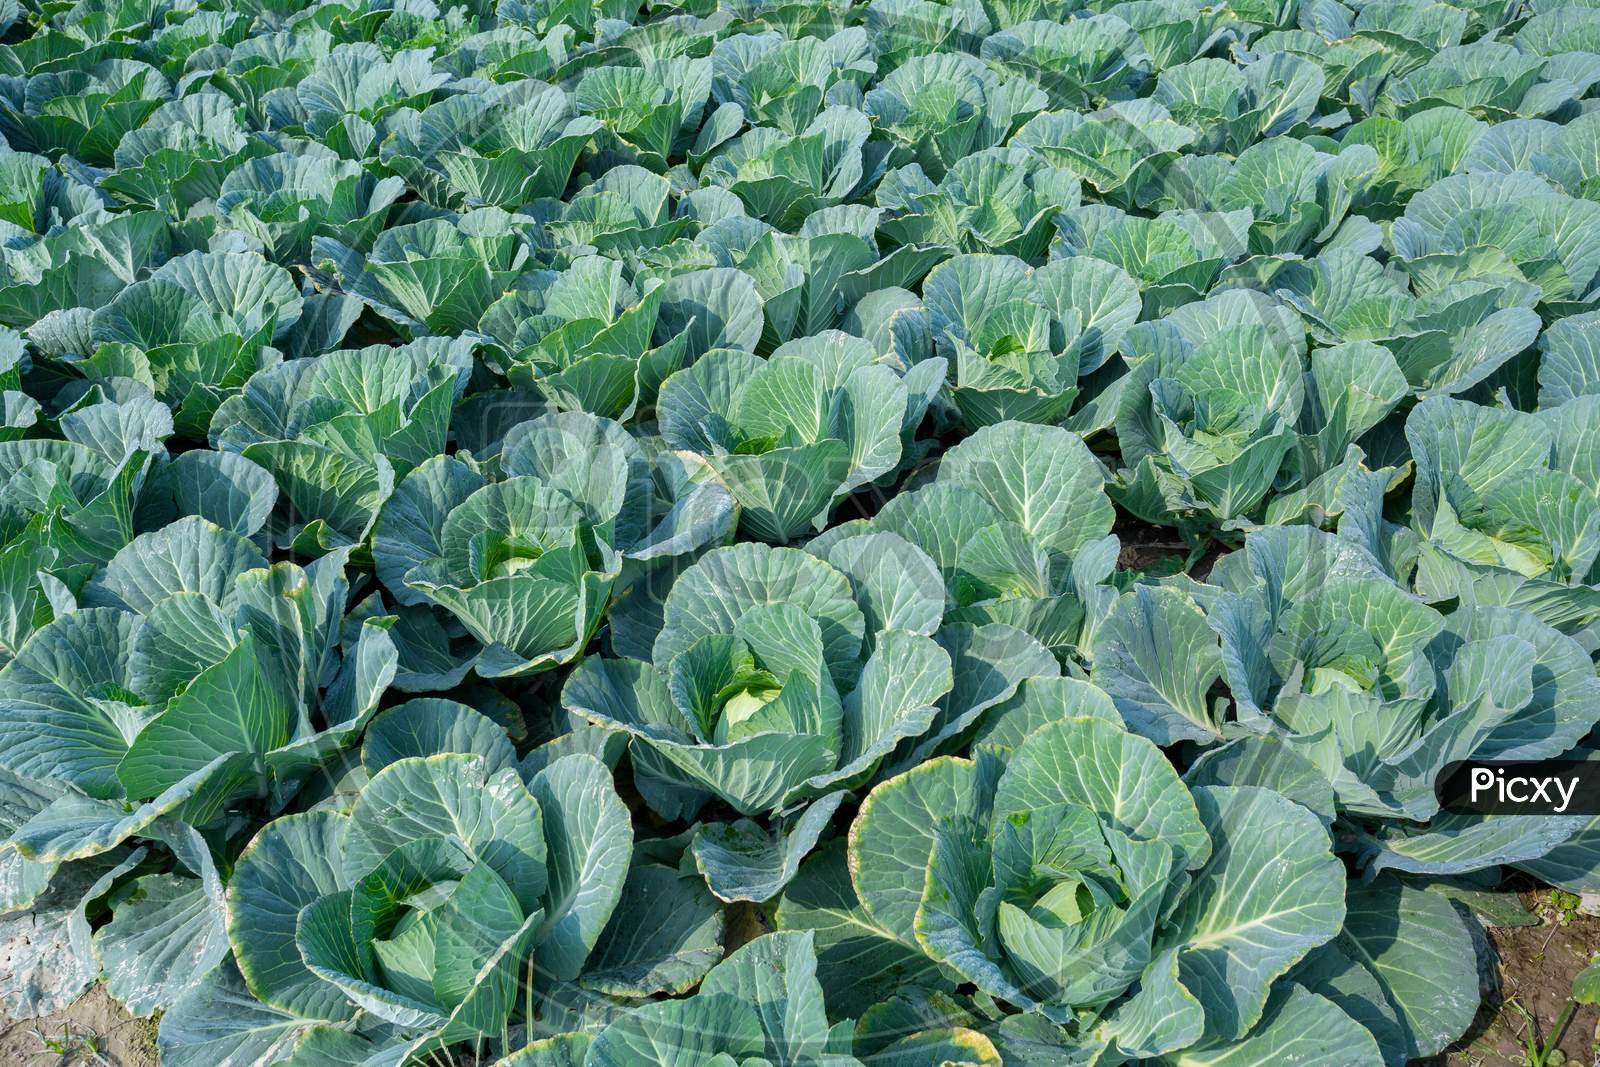 Green Cabbage Crop Growing At Vegetable Field Near Of Savar, Dhaka, Bangladesh.